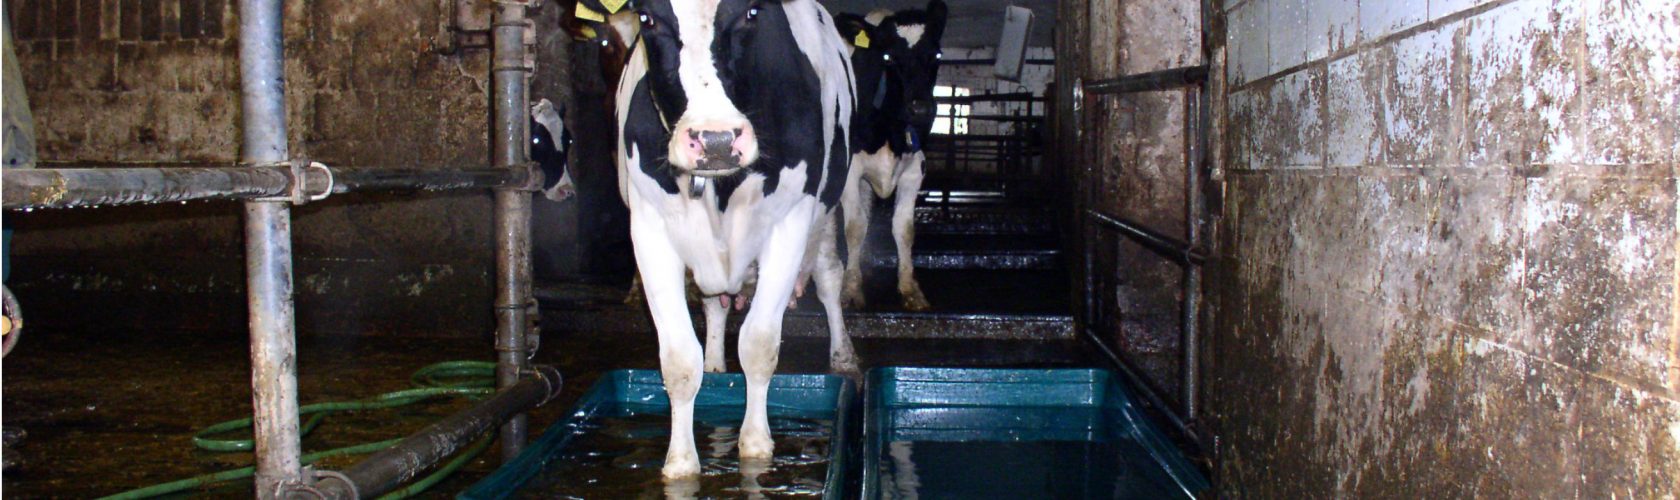 Beeld: melkkoe loopt door een bad giftige chemicaliën